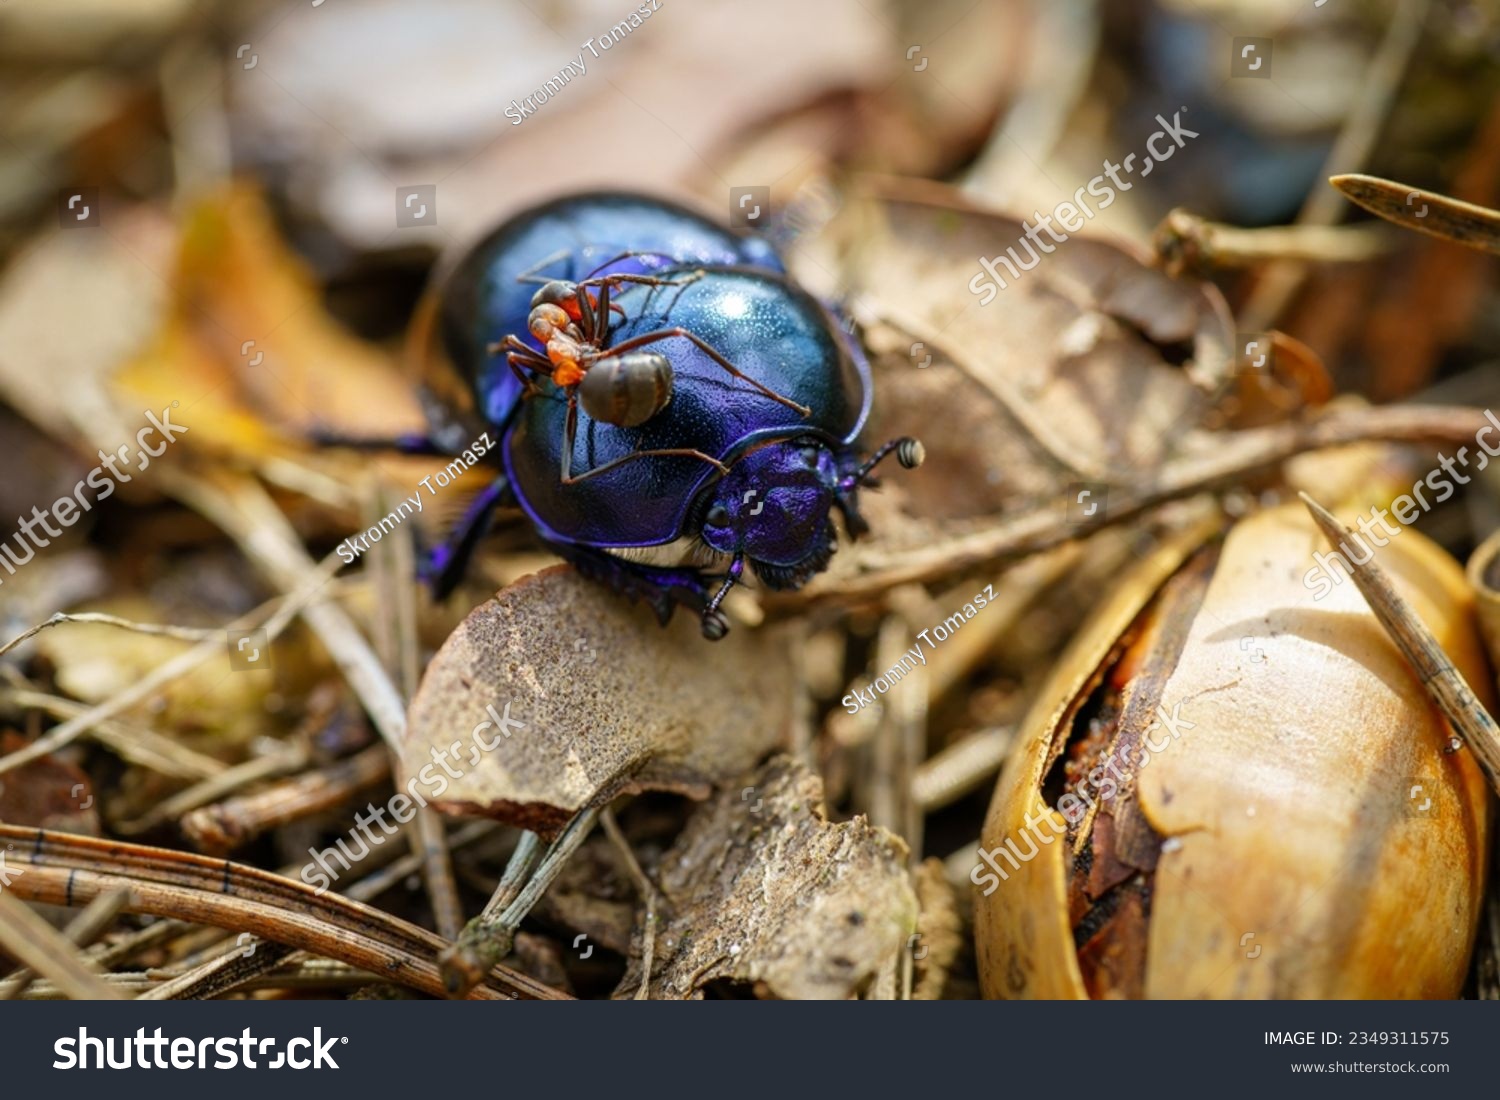 Imãgenes fotos de stock objetos en d y vectores sobre escarabajo de dung